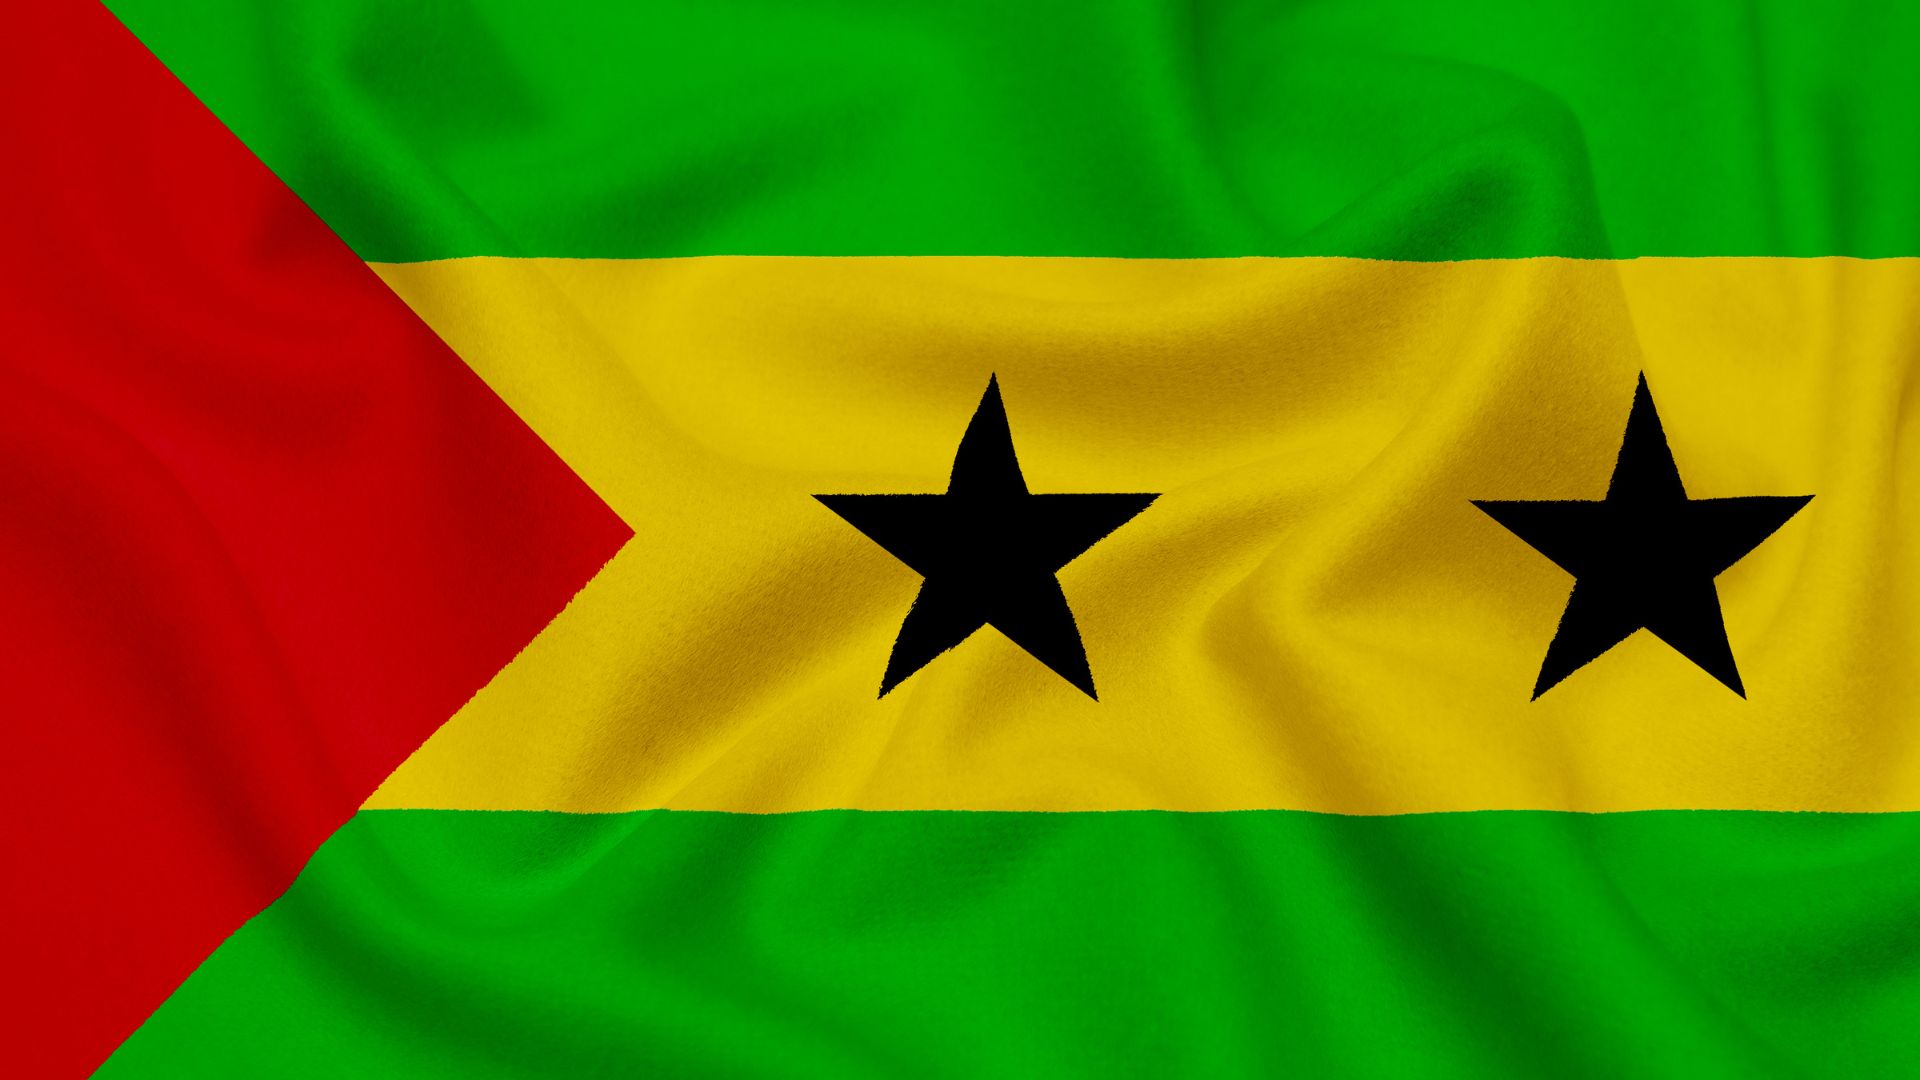 A bandeira é composta por três cores: vermelho, amarelo e verde. O triângulo vermelho simboliza a luta pela independência e as duas estrelas negras representam as duas principais ilhas do país, a de São Tomé e a de Príncipe.